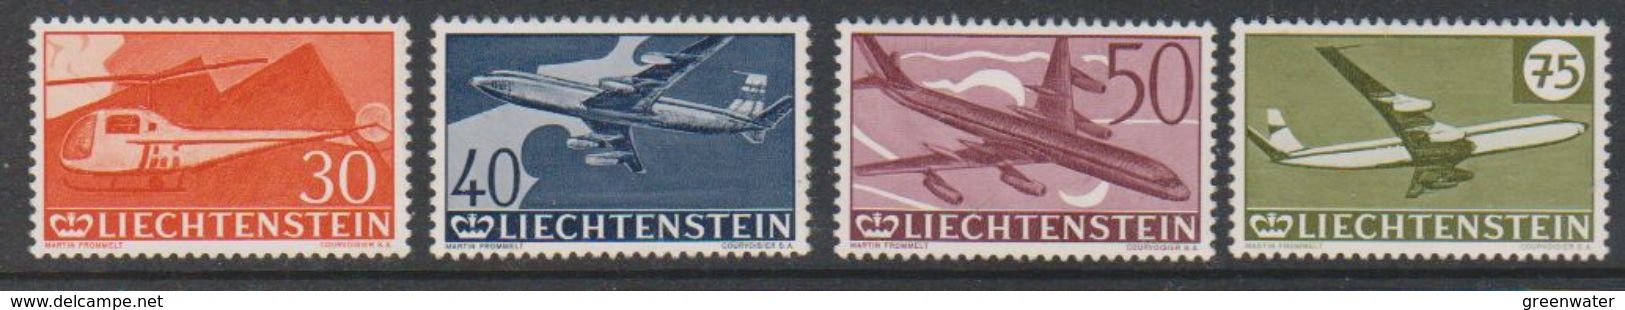 Liechtenstein 1960 Airmail Stamps 4v Mint (regummed) (39550) - Poste Aérienne